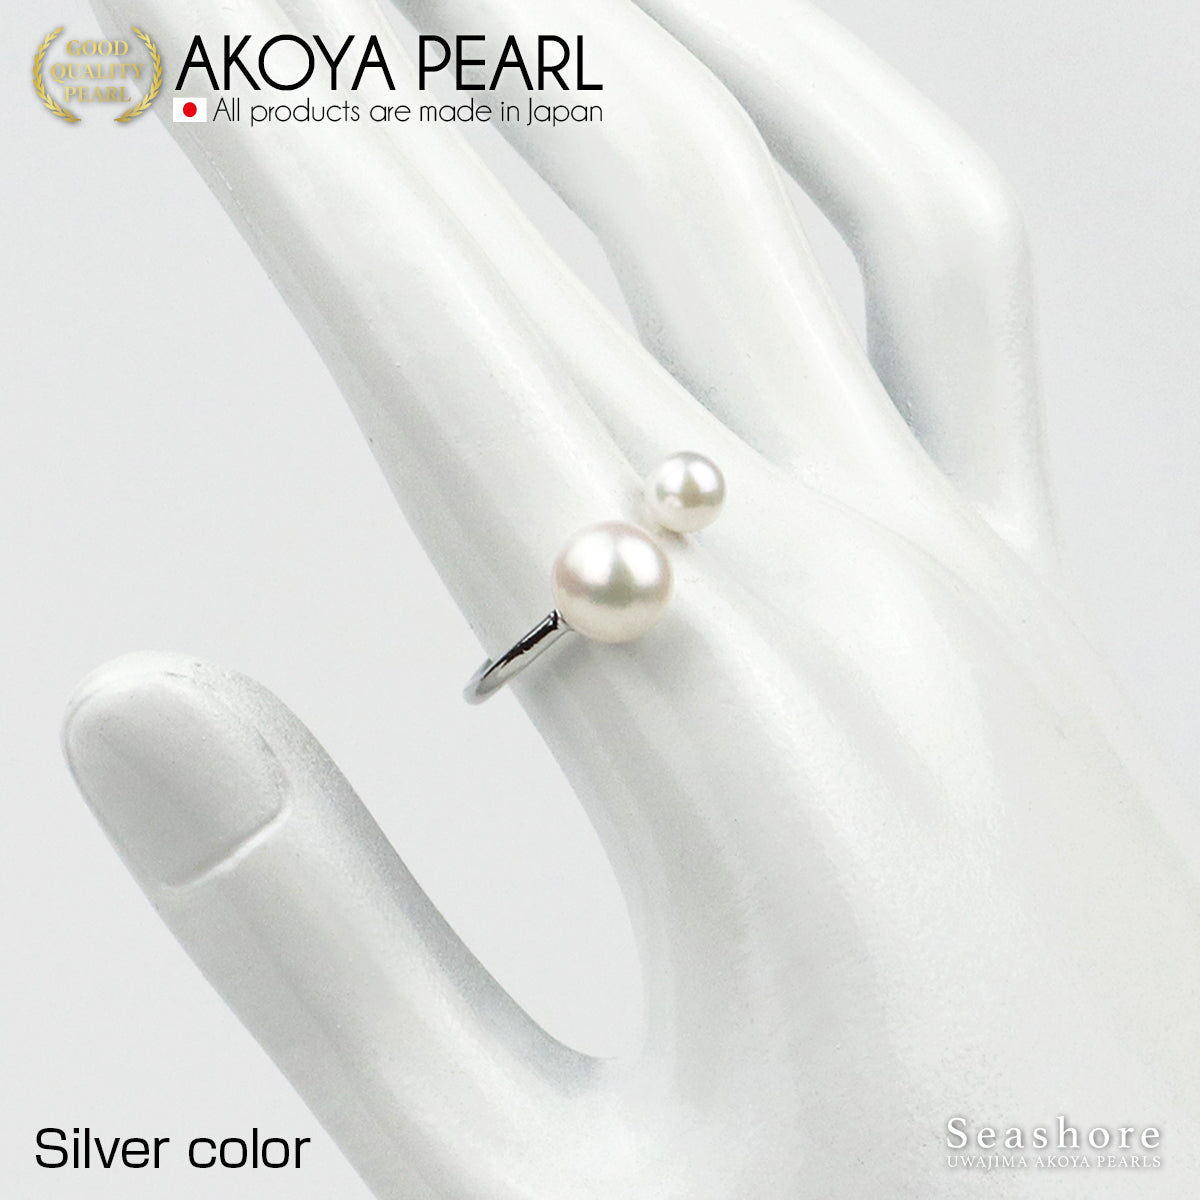 あこや真珠 2珠パールリング 全3色 5.0-8.5mm フリーサイズ アコヤ パール フォークリング